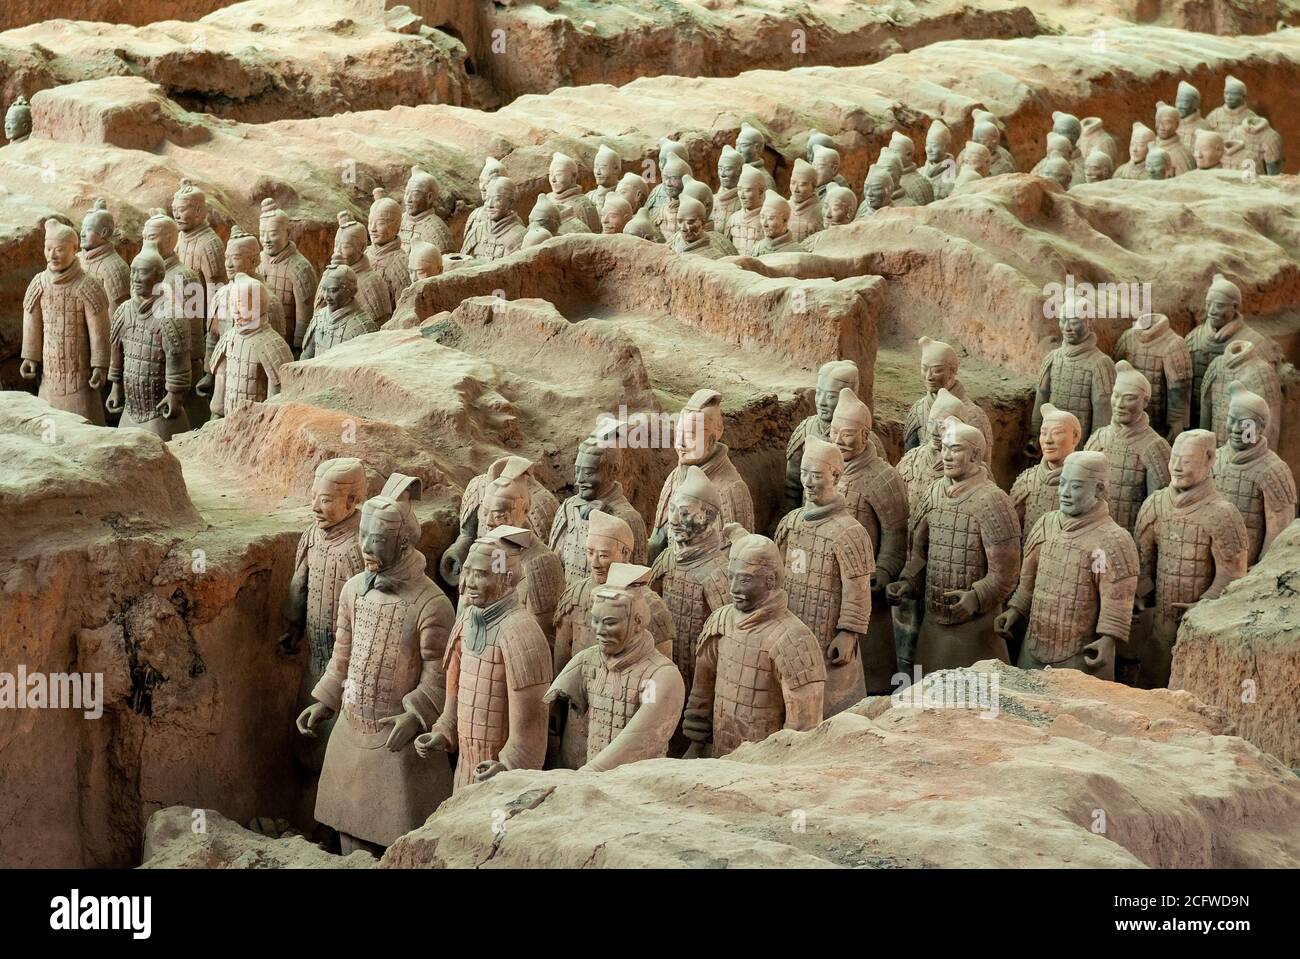 Soldats de l'armée de terre cuite dans le tombeau mausolée de Qin Shi Huang, premier empereur de Chine, Xian, province de Shaanxi, Chine. Banque D'Images